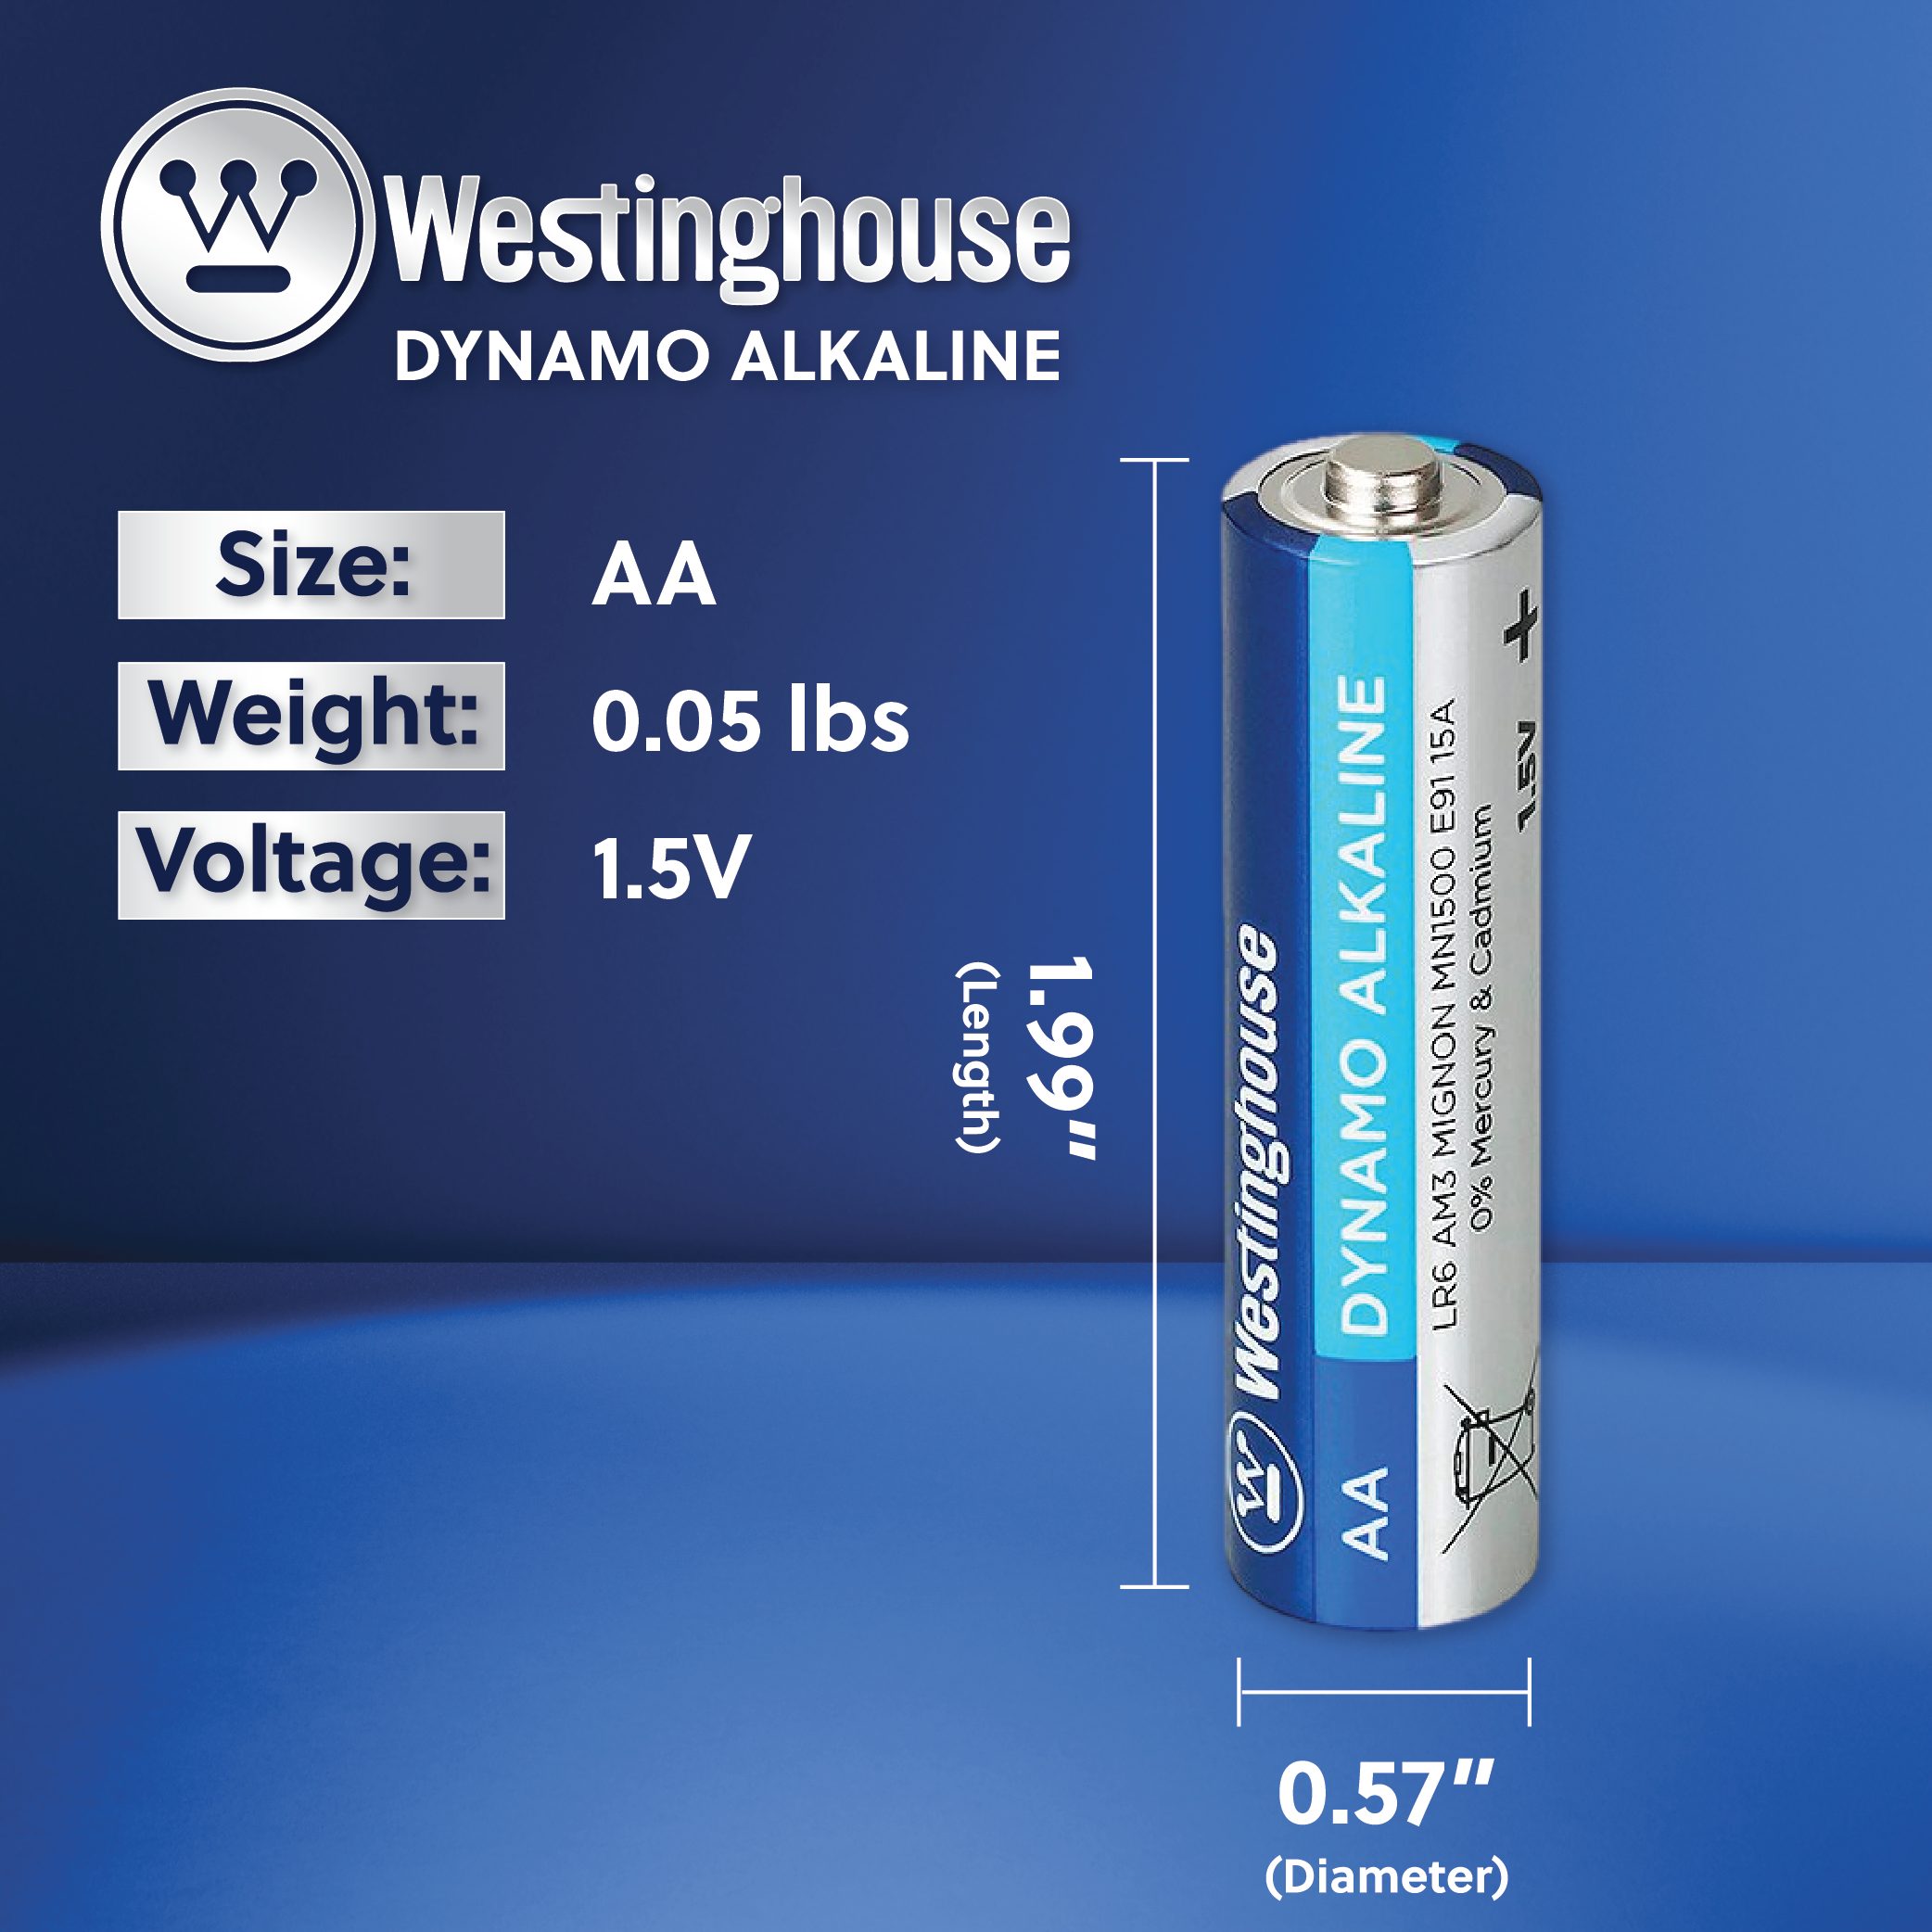 Westinghouse AA Dynamo Alkaline Hard Plastic Case of 48